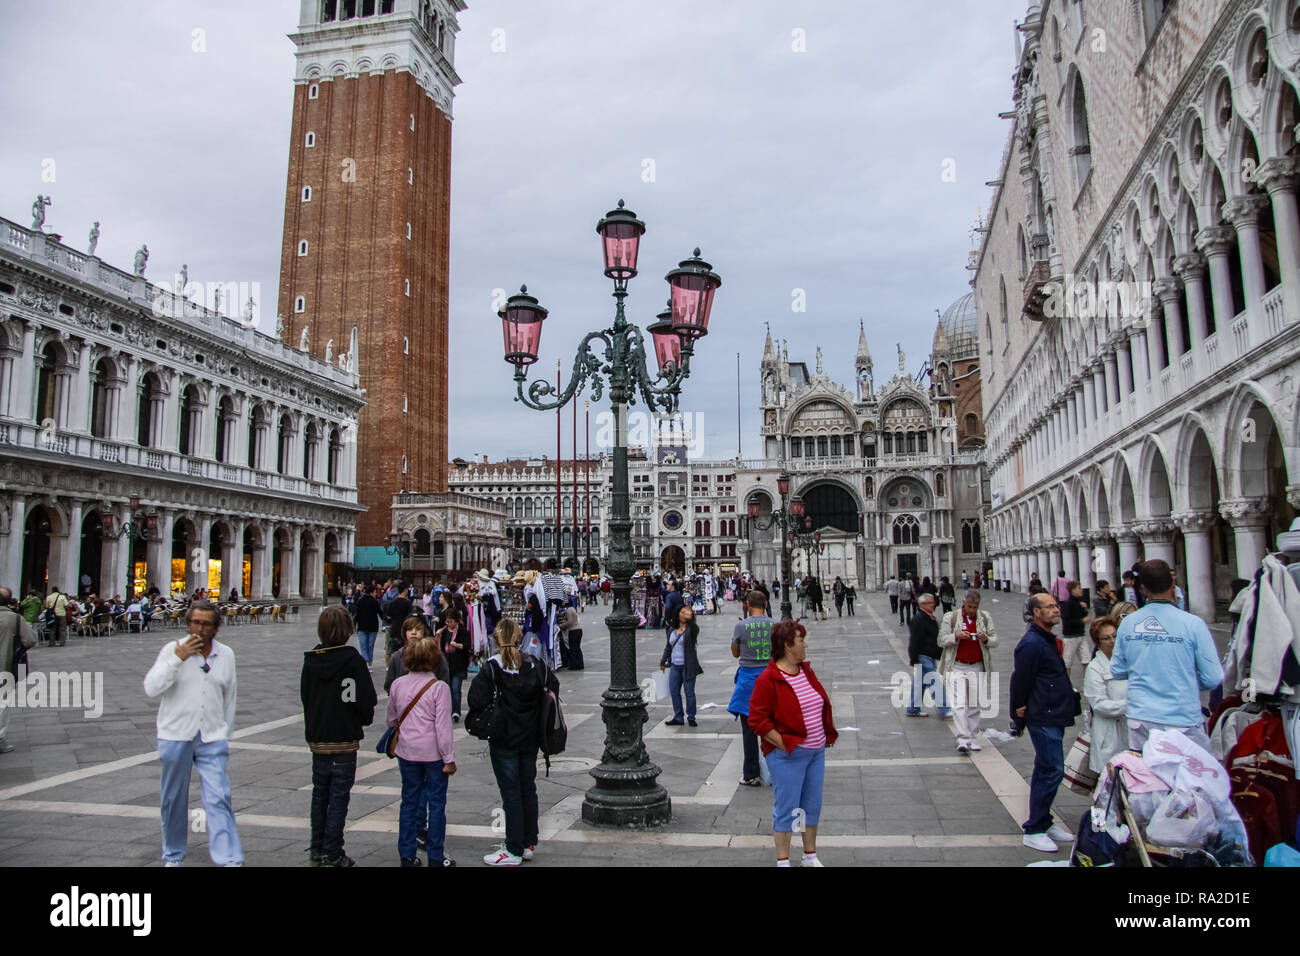 Venezia, Italia - 29 Maggio 2016: Venezia in Italia, l'architettura della città di Venezia è una destinazione turistica popolare dell'Europa. Foto Stock